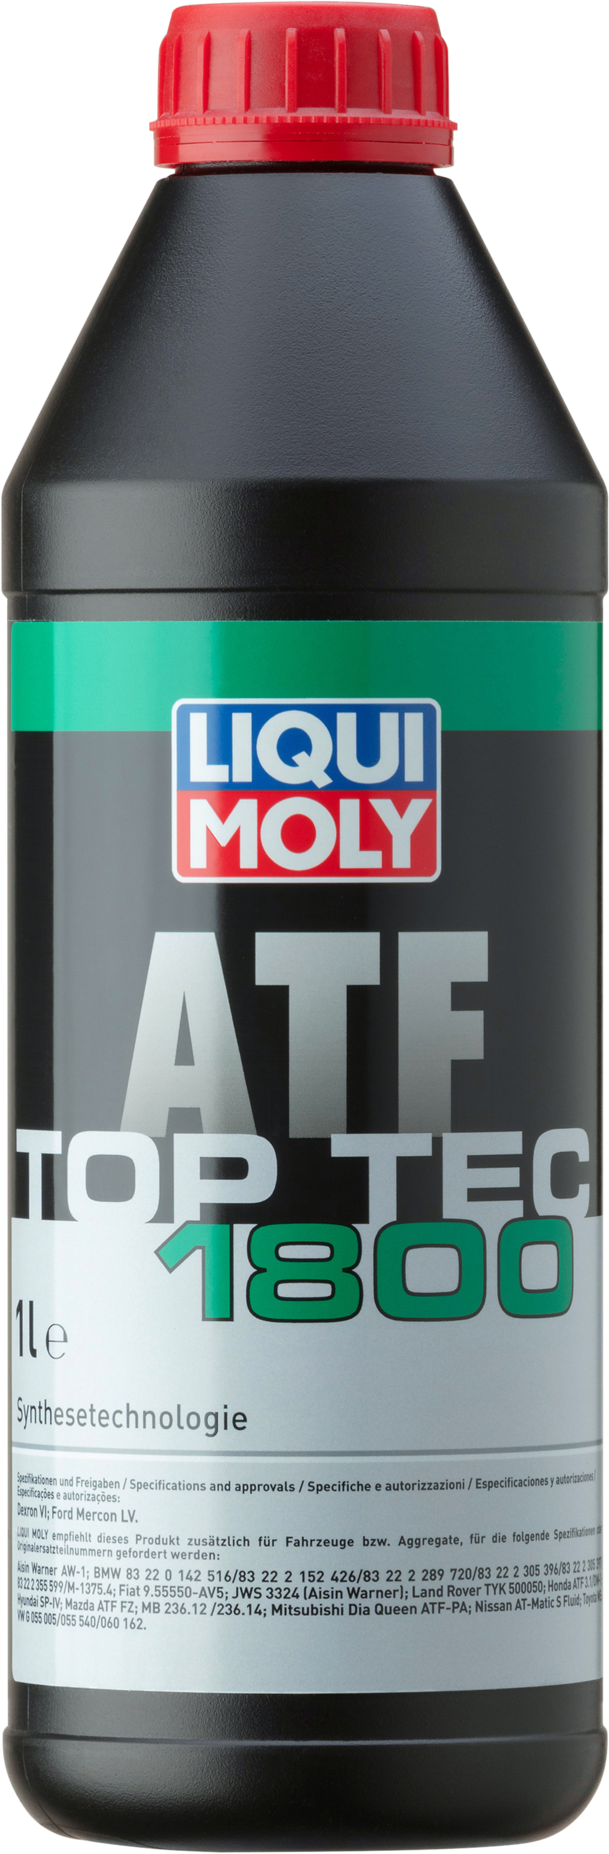 Liqui Moly Top Tec ATF 1800, 1 lt